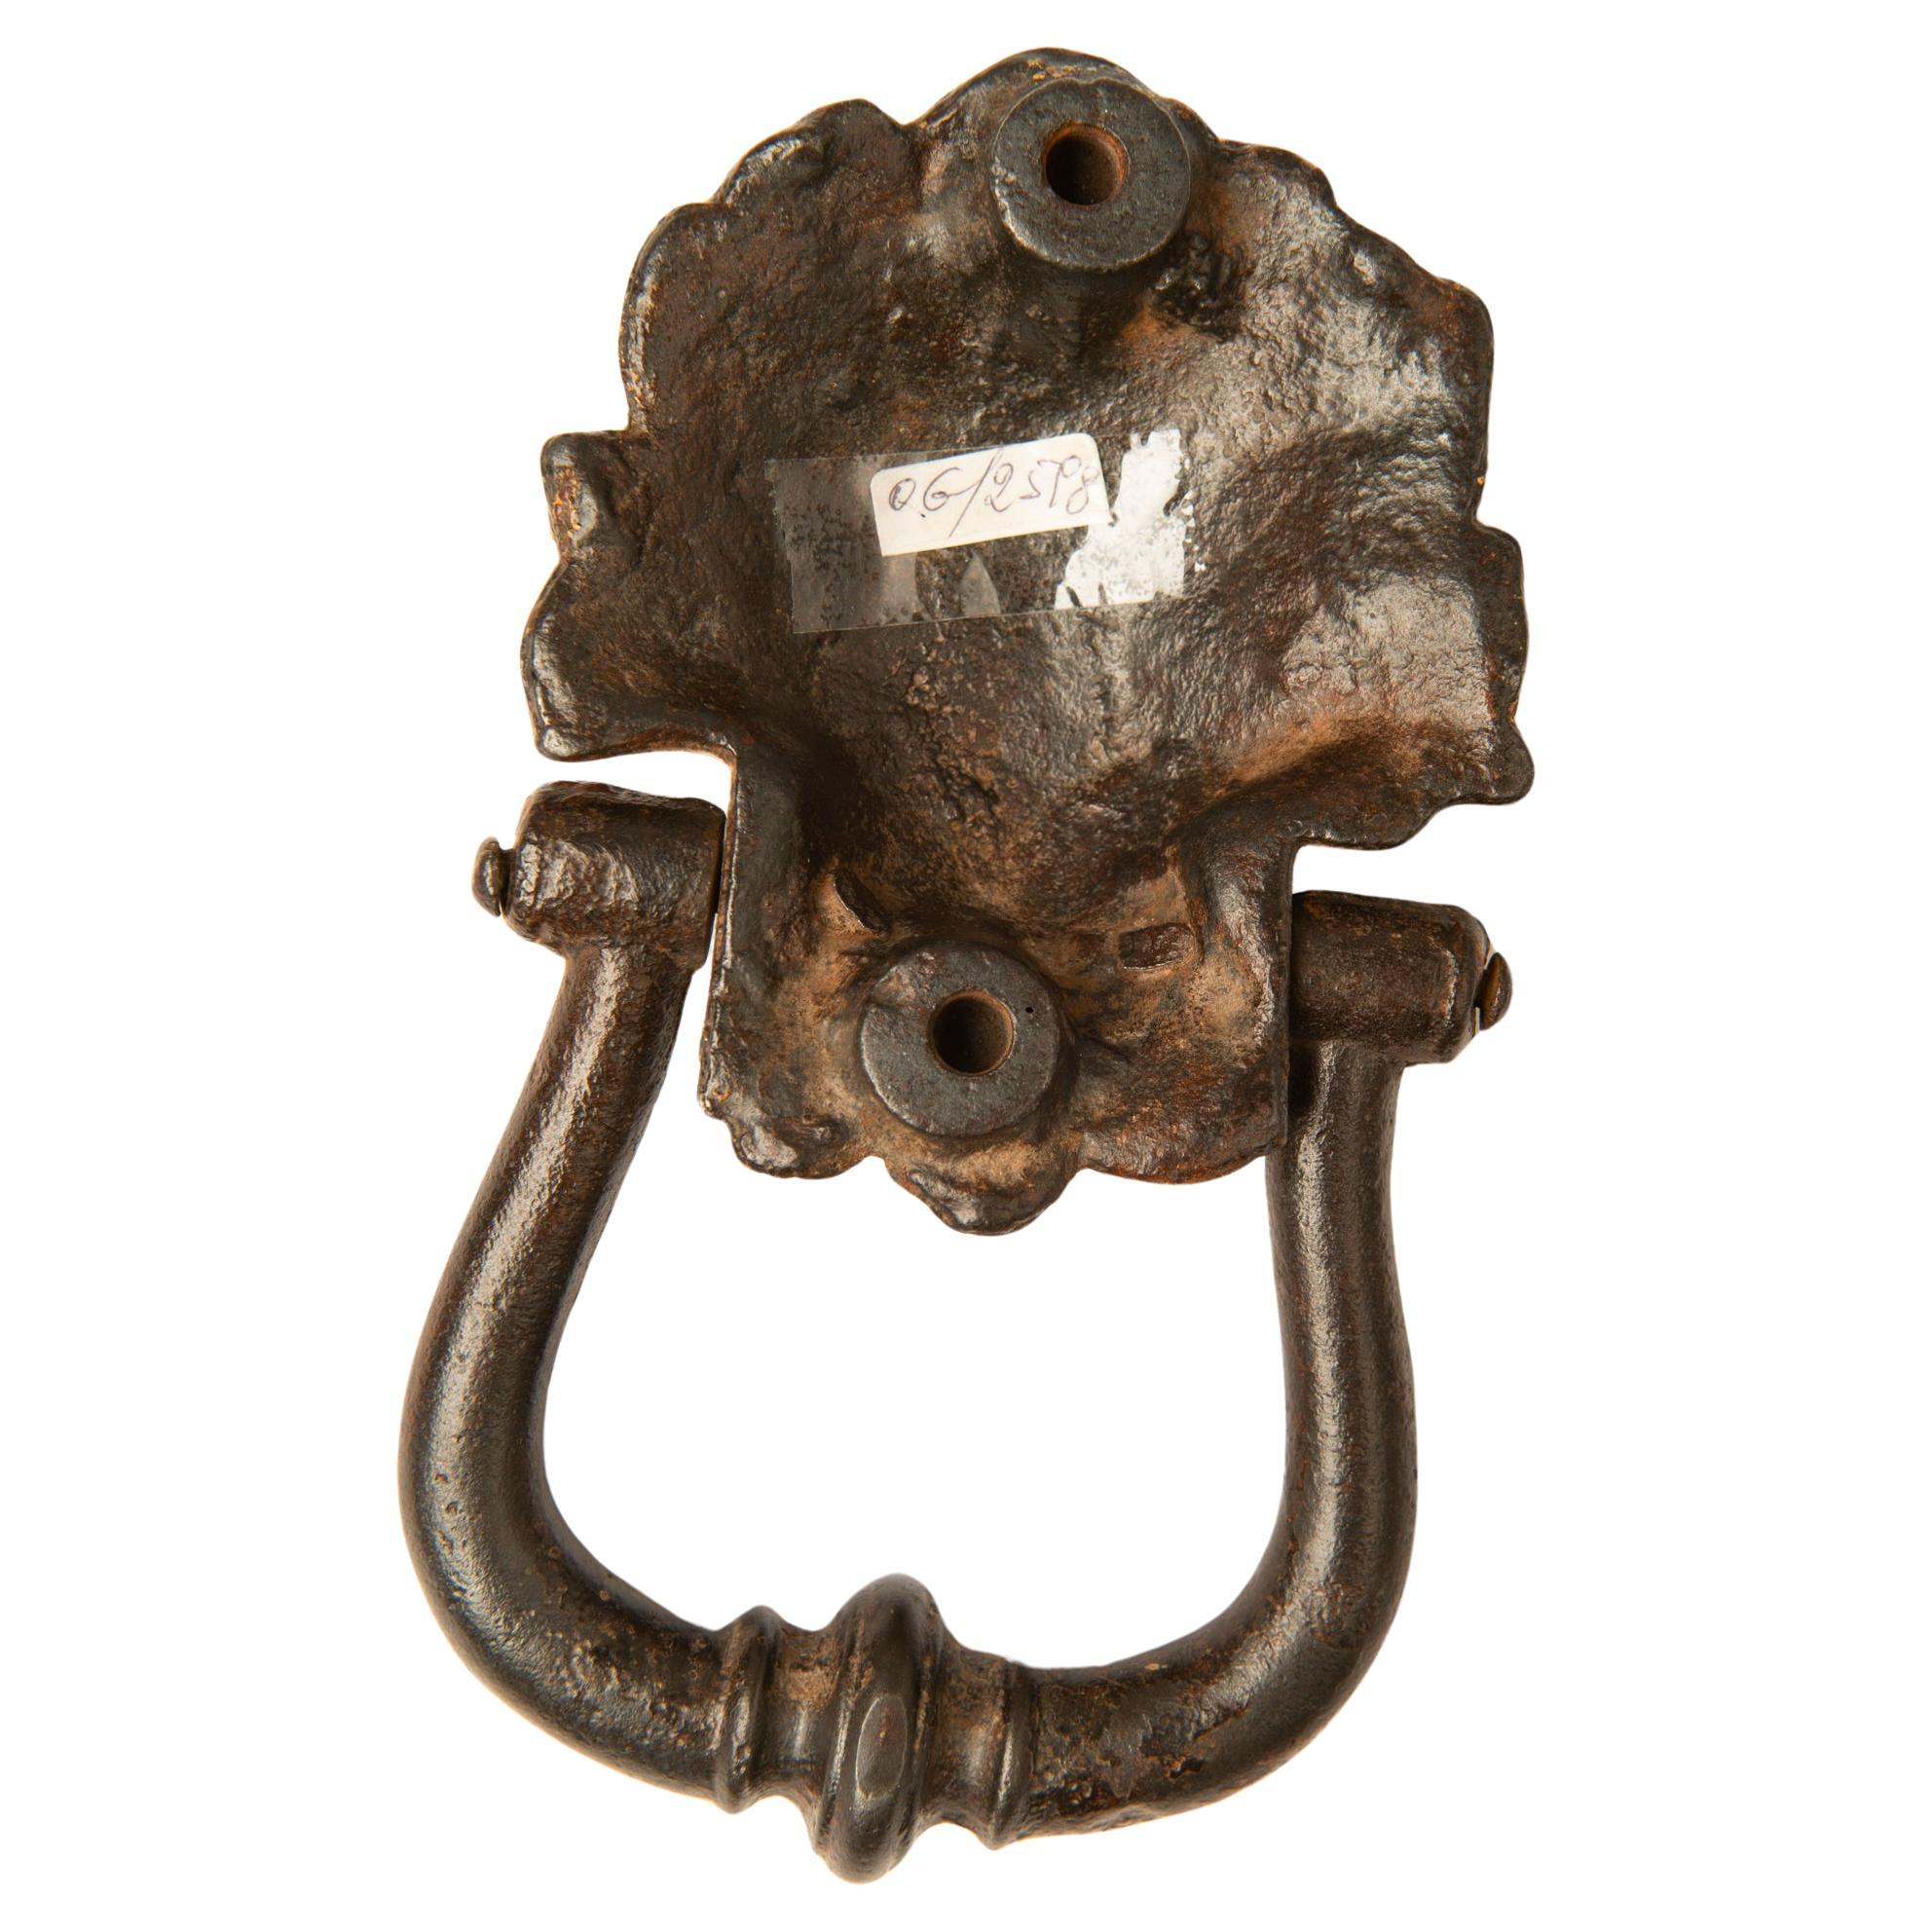 O/2598 - Antiker Türklopfer mit Löwenkopf.  Ich glaube, es stammt aus dem frühen 19. Jahrhundert, vielleicht aber auch aus der Zeit davor.
Schön an der Tür, aber auch nützlich als Briefbeschwerer, auf Plexiglas oder einem Holzsockel.